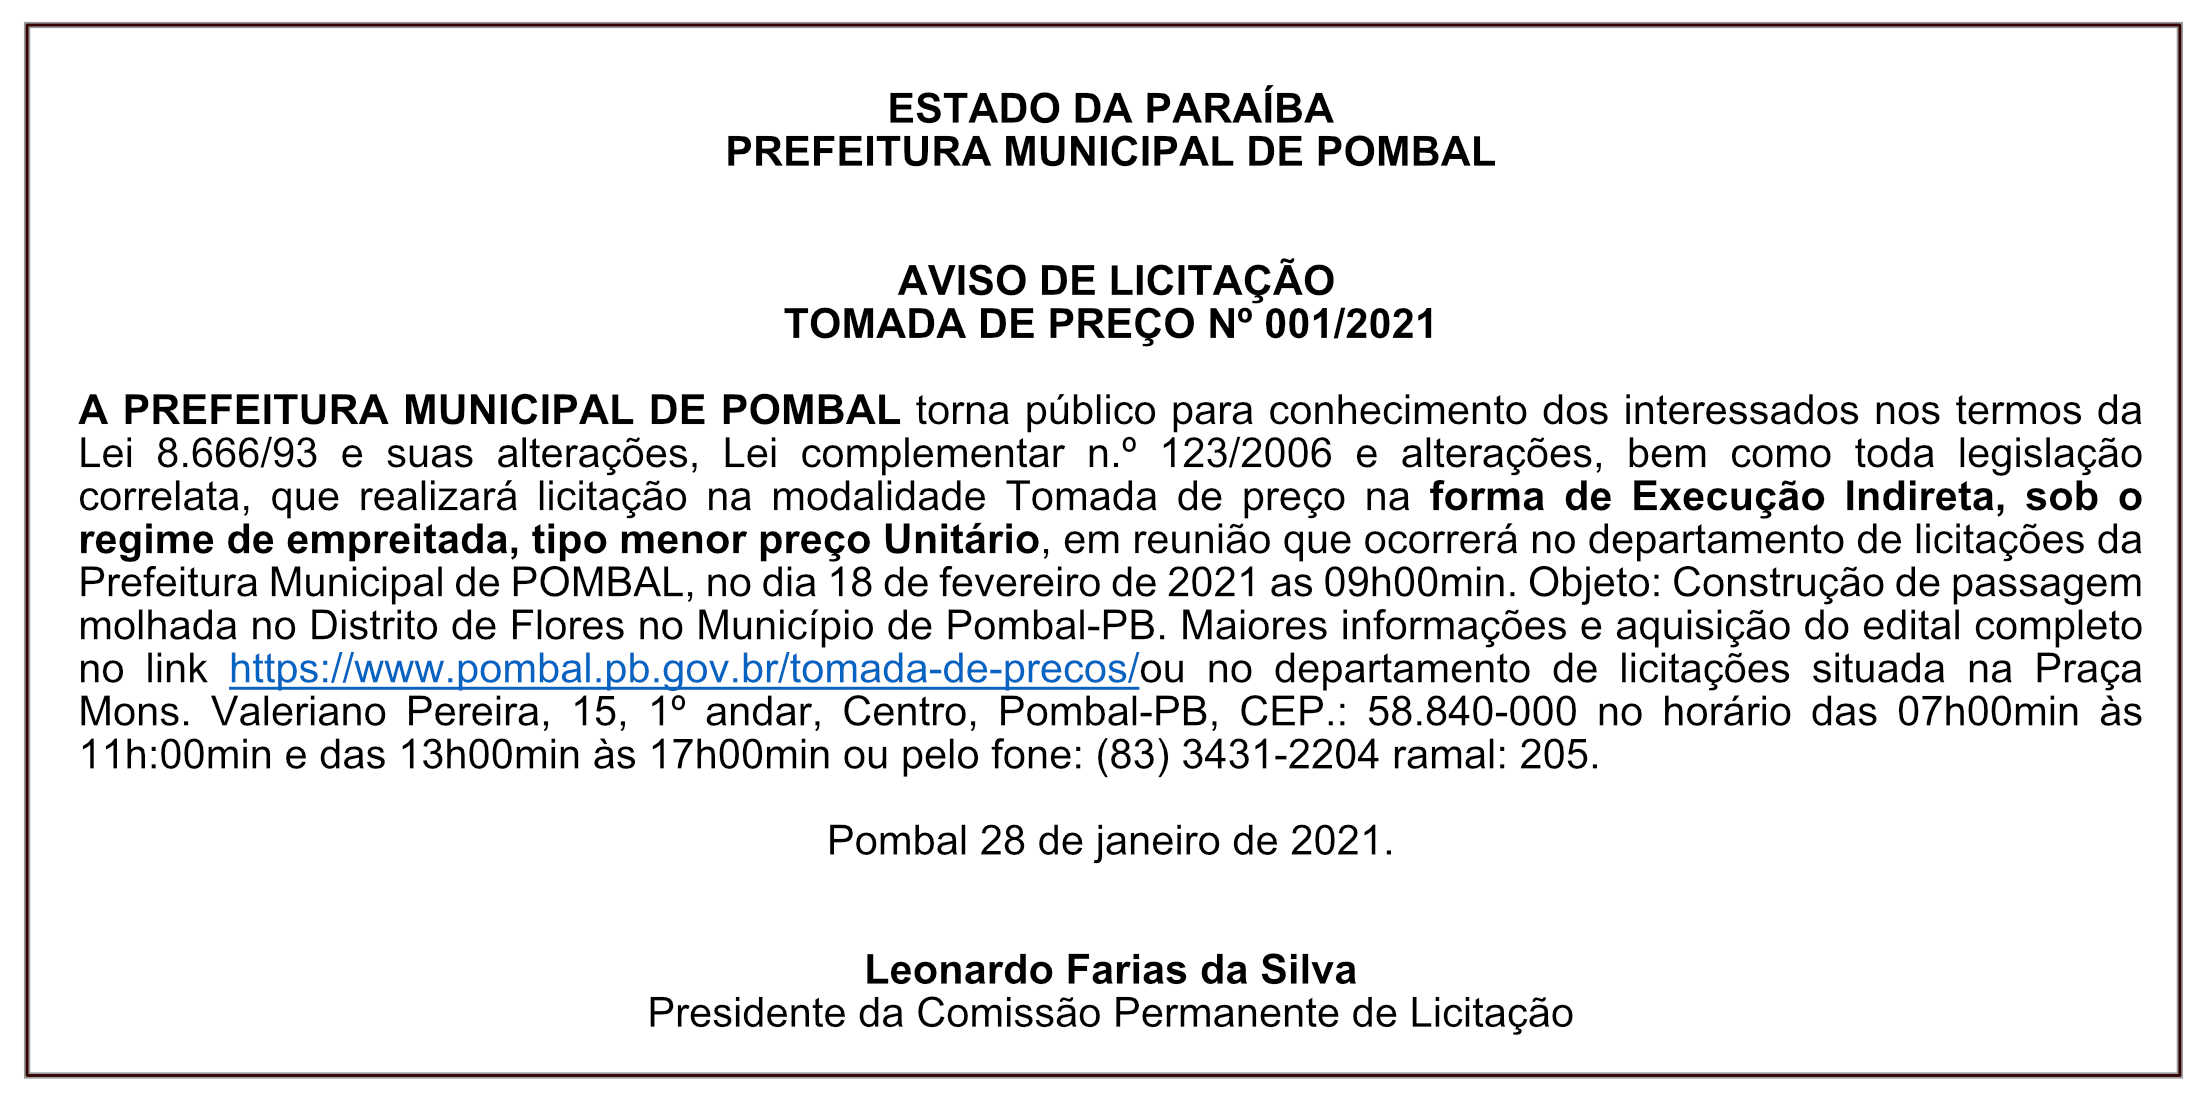 PREFEITURA MUNICIPAL DE POMBAL – AVISO DE LICITAÇÃO – TOMADA DE PREÇO Nº 001/2021